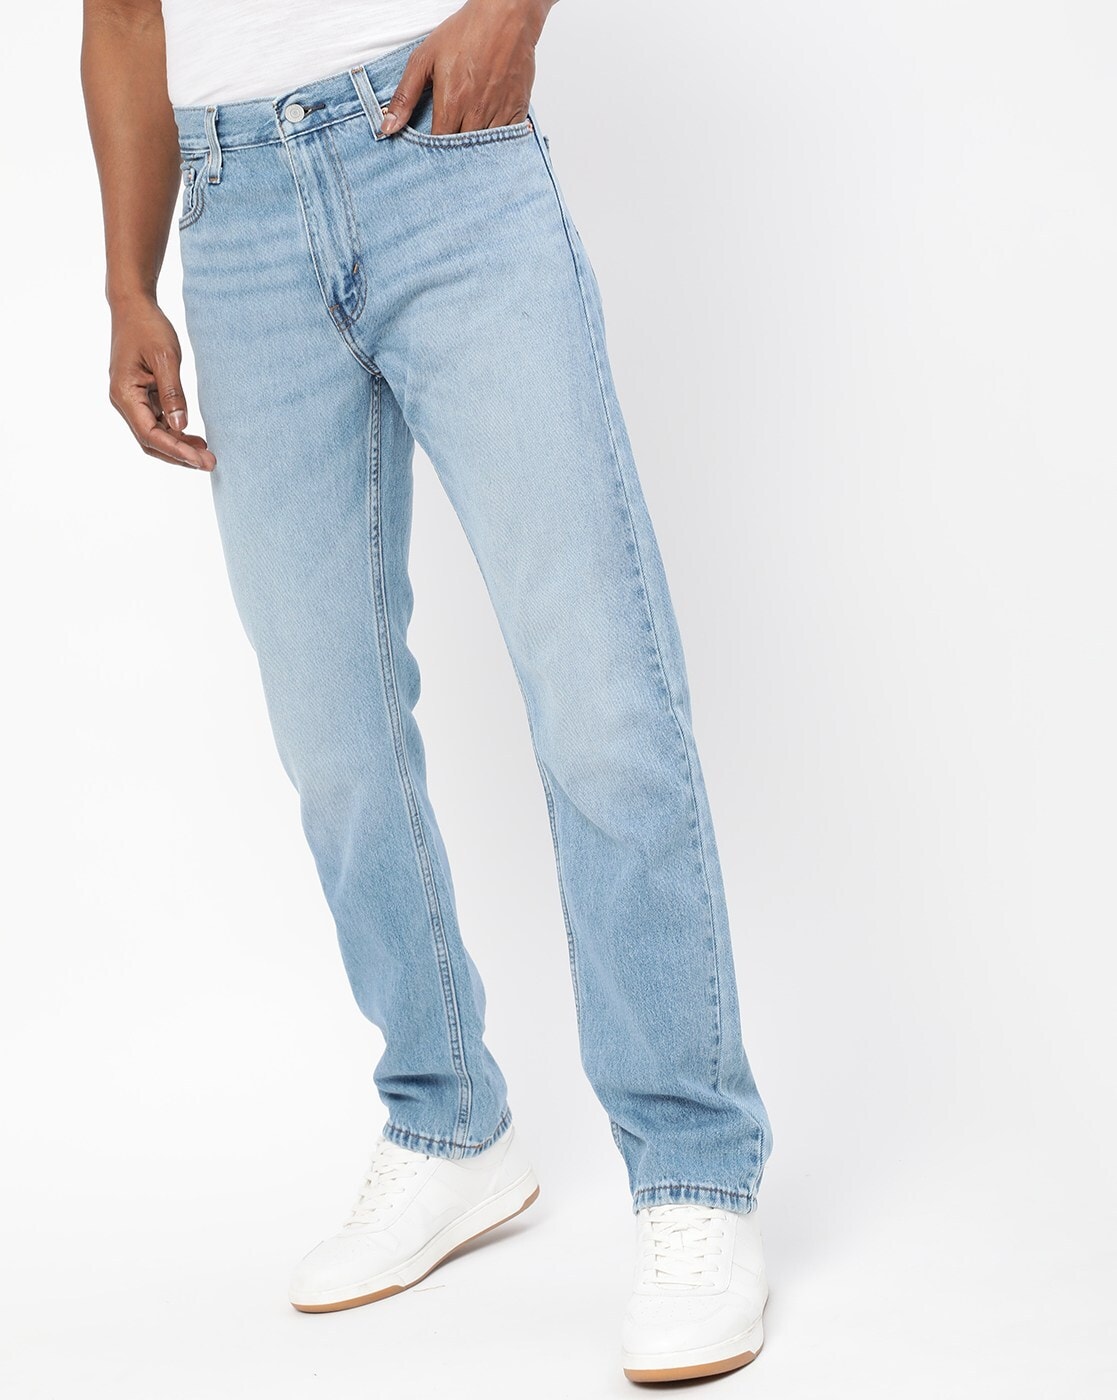 LEVI'S jeans LEVIS DEMI Curve ID SKINNY woman NEW MODEL 54703 BLU denim  USED WASH STRETCH